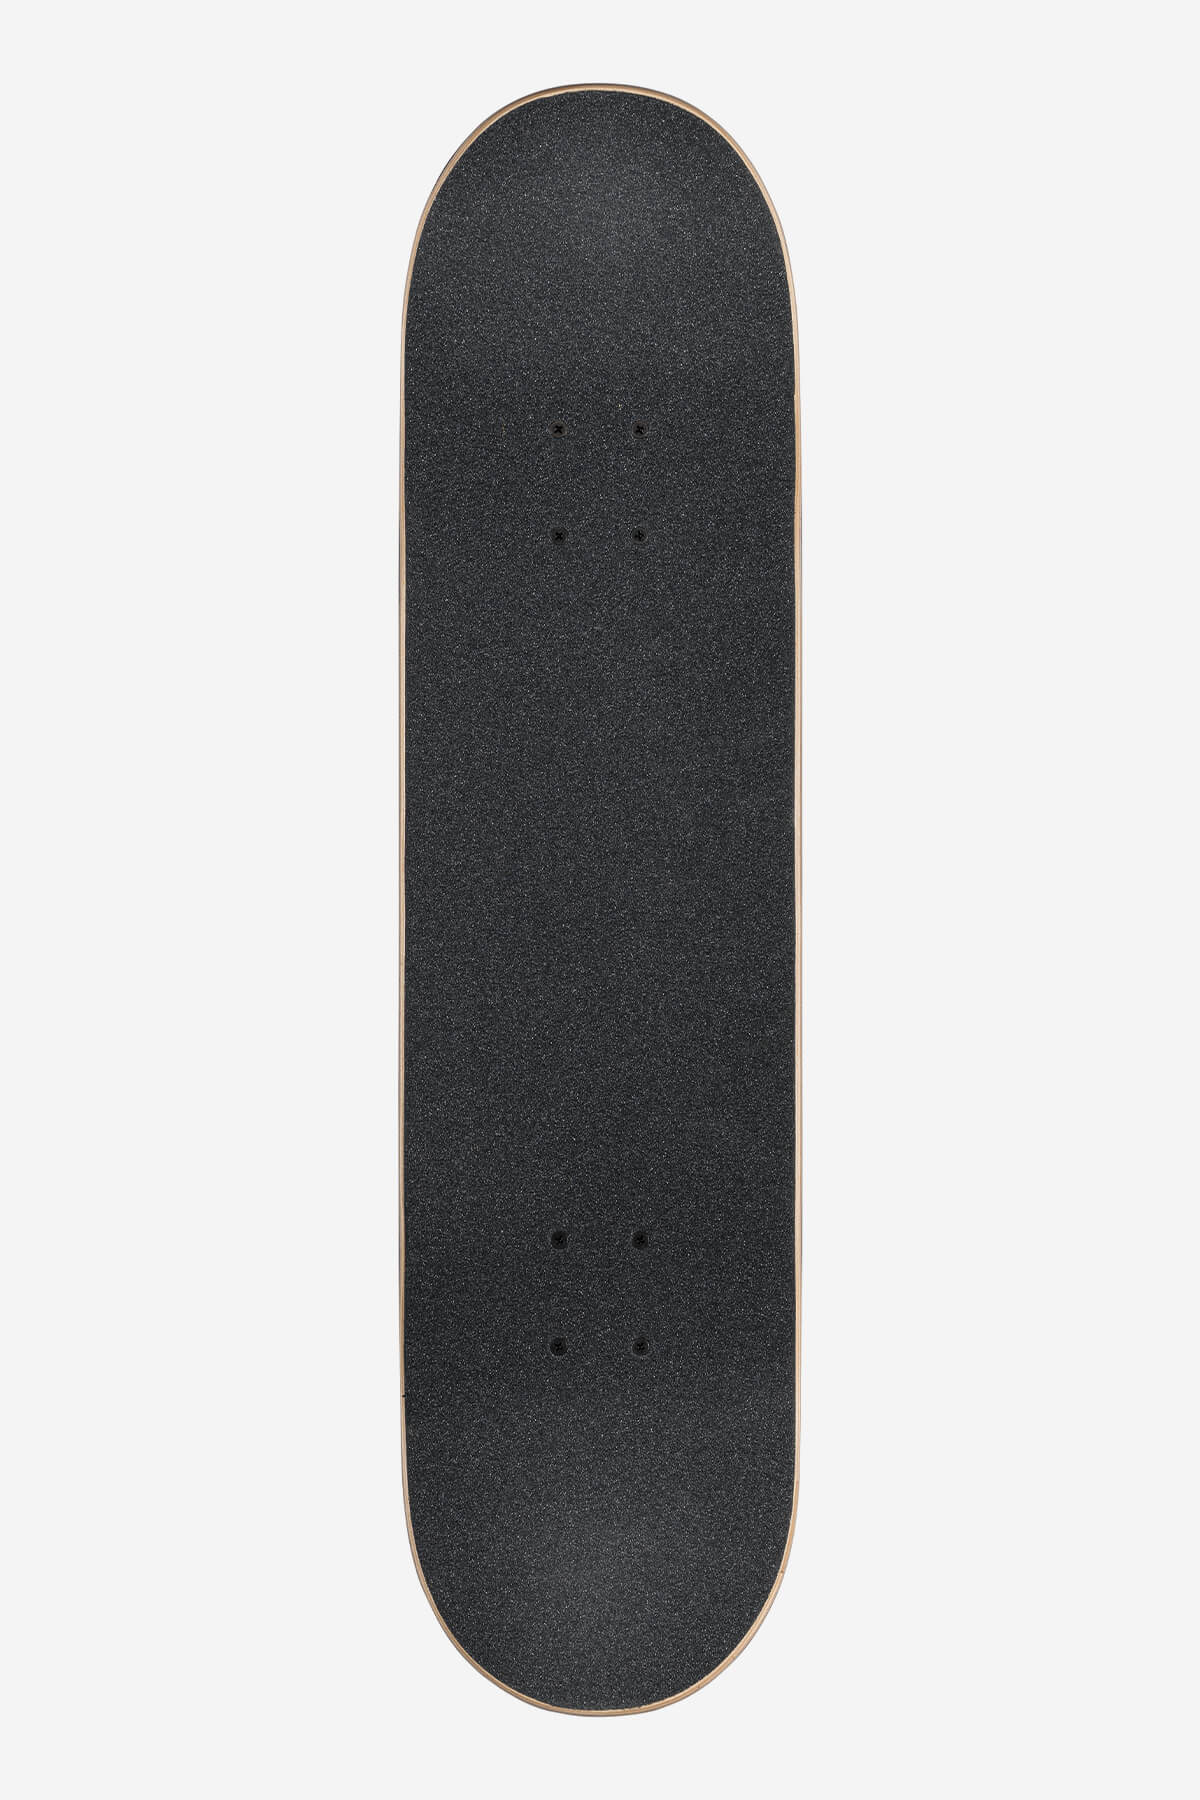 Globe - G1 Lineform - Olive - 8.0" Komplett Skateboard